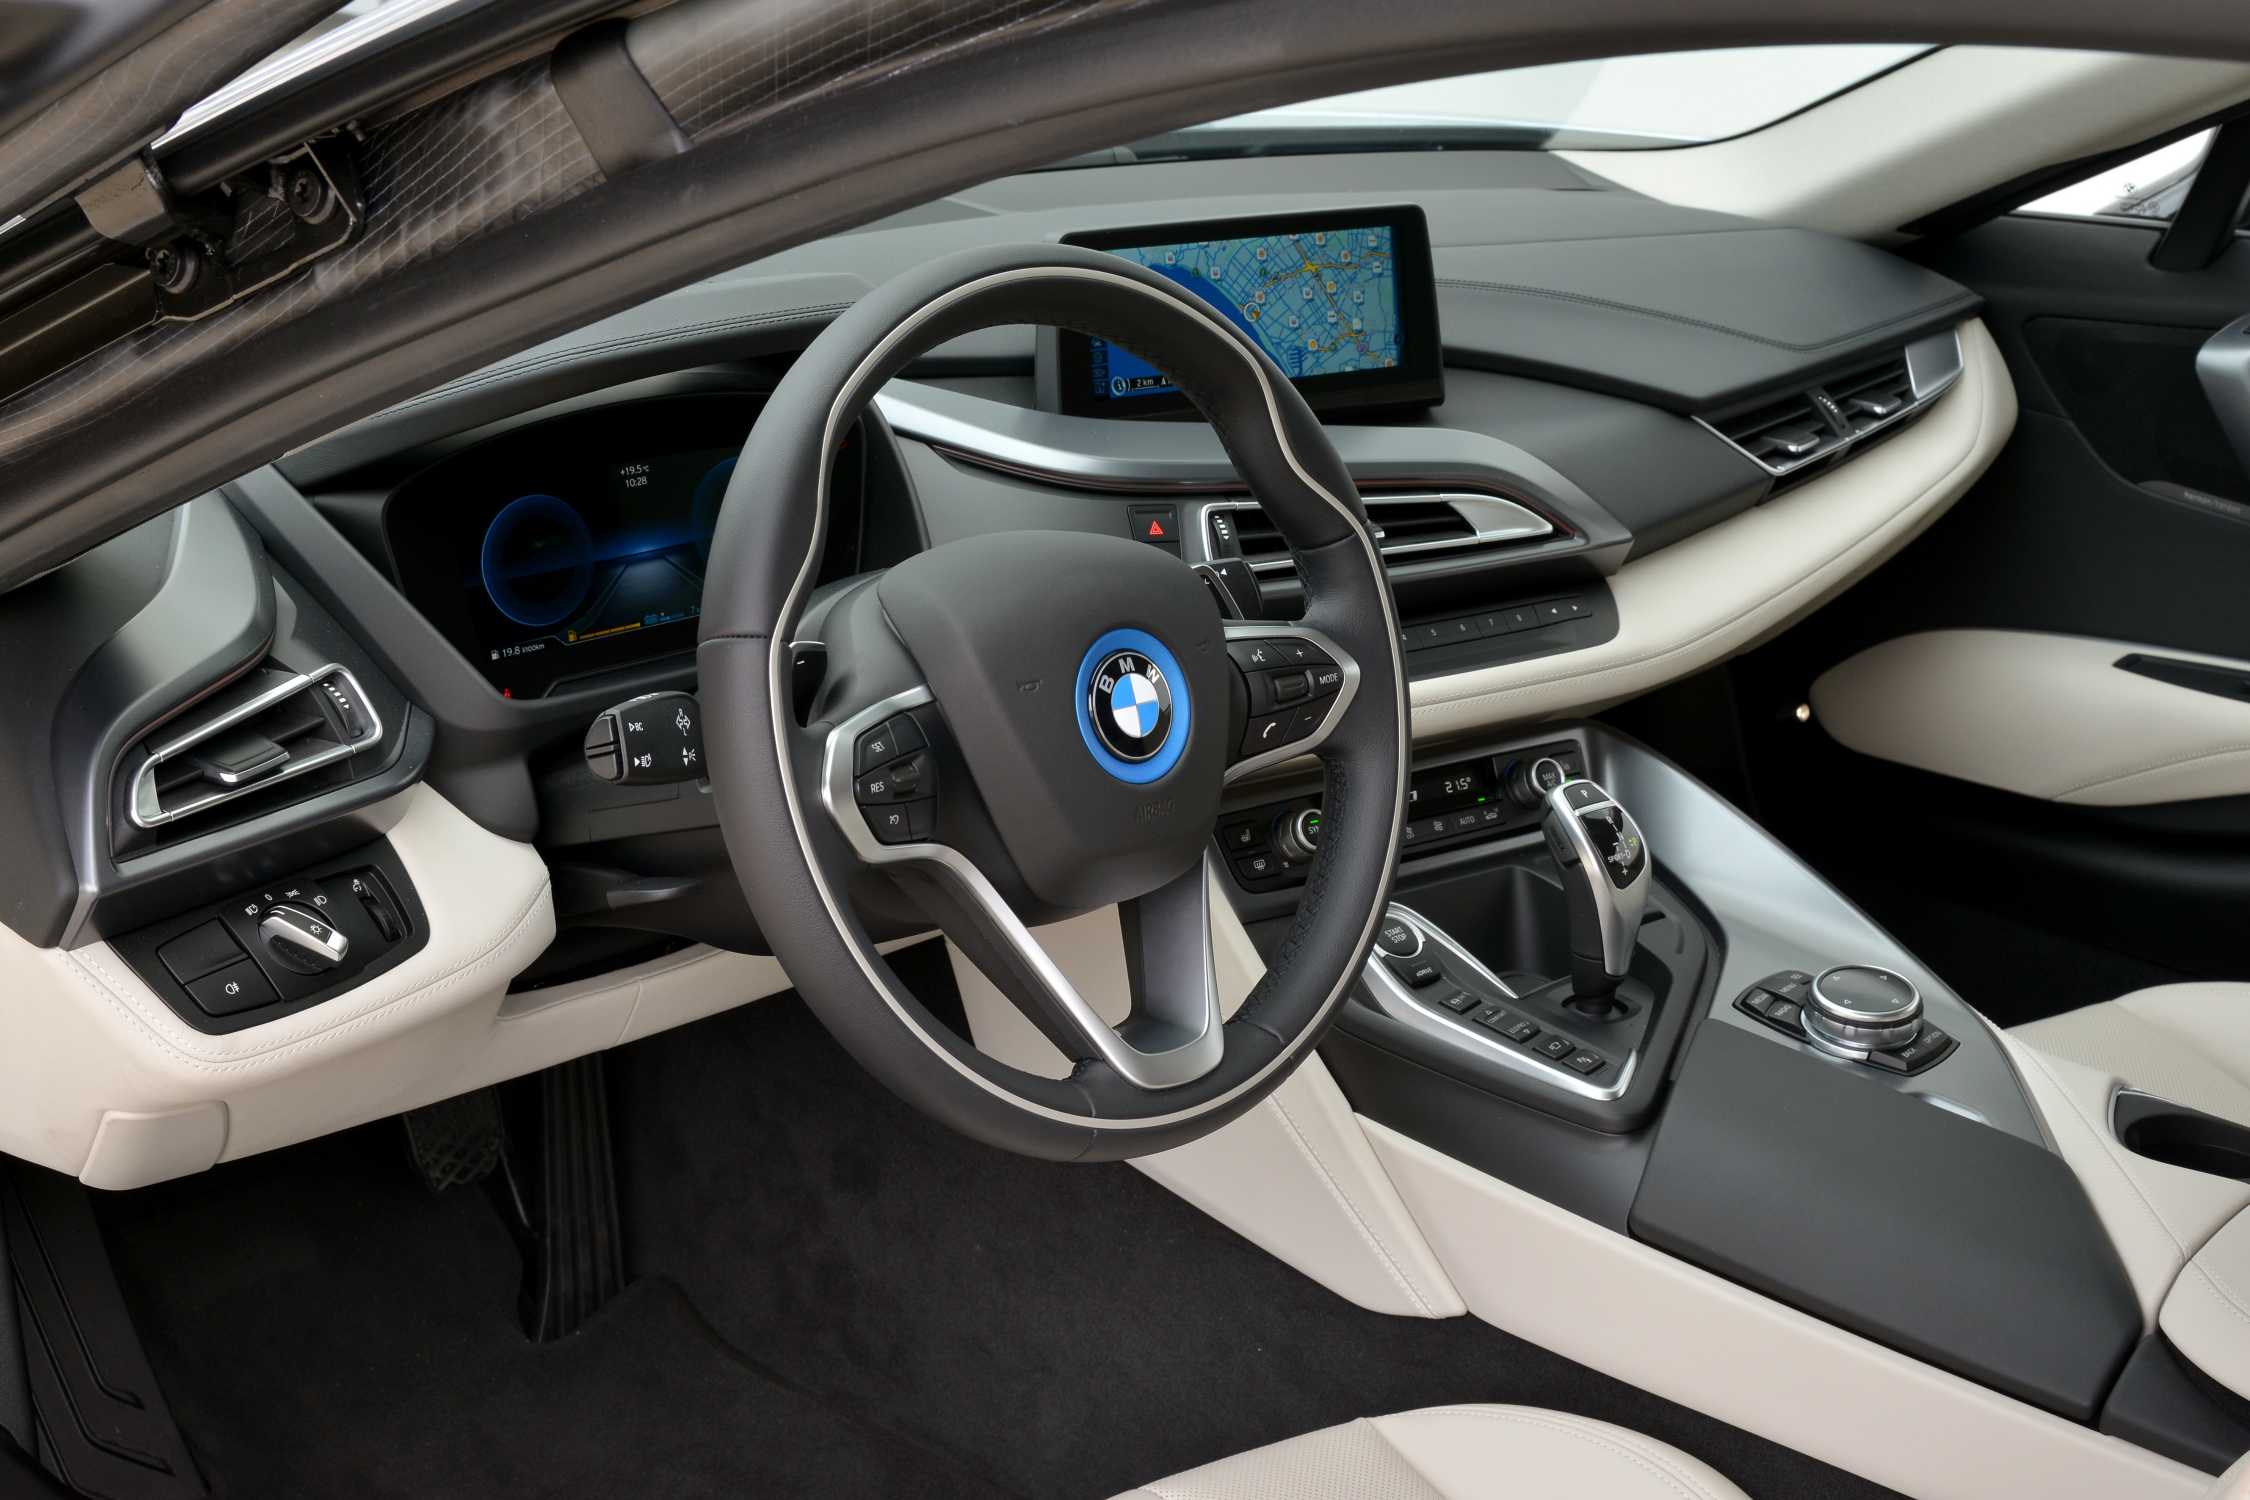 BMW i8, interior (04/2014)